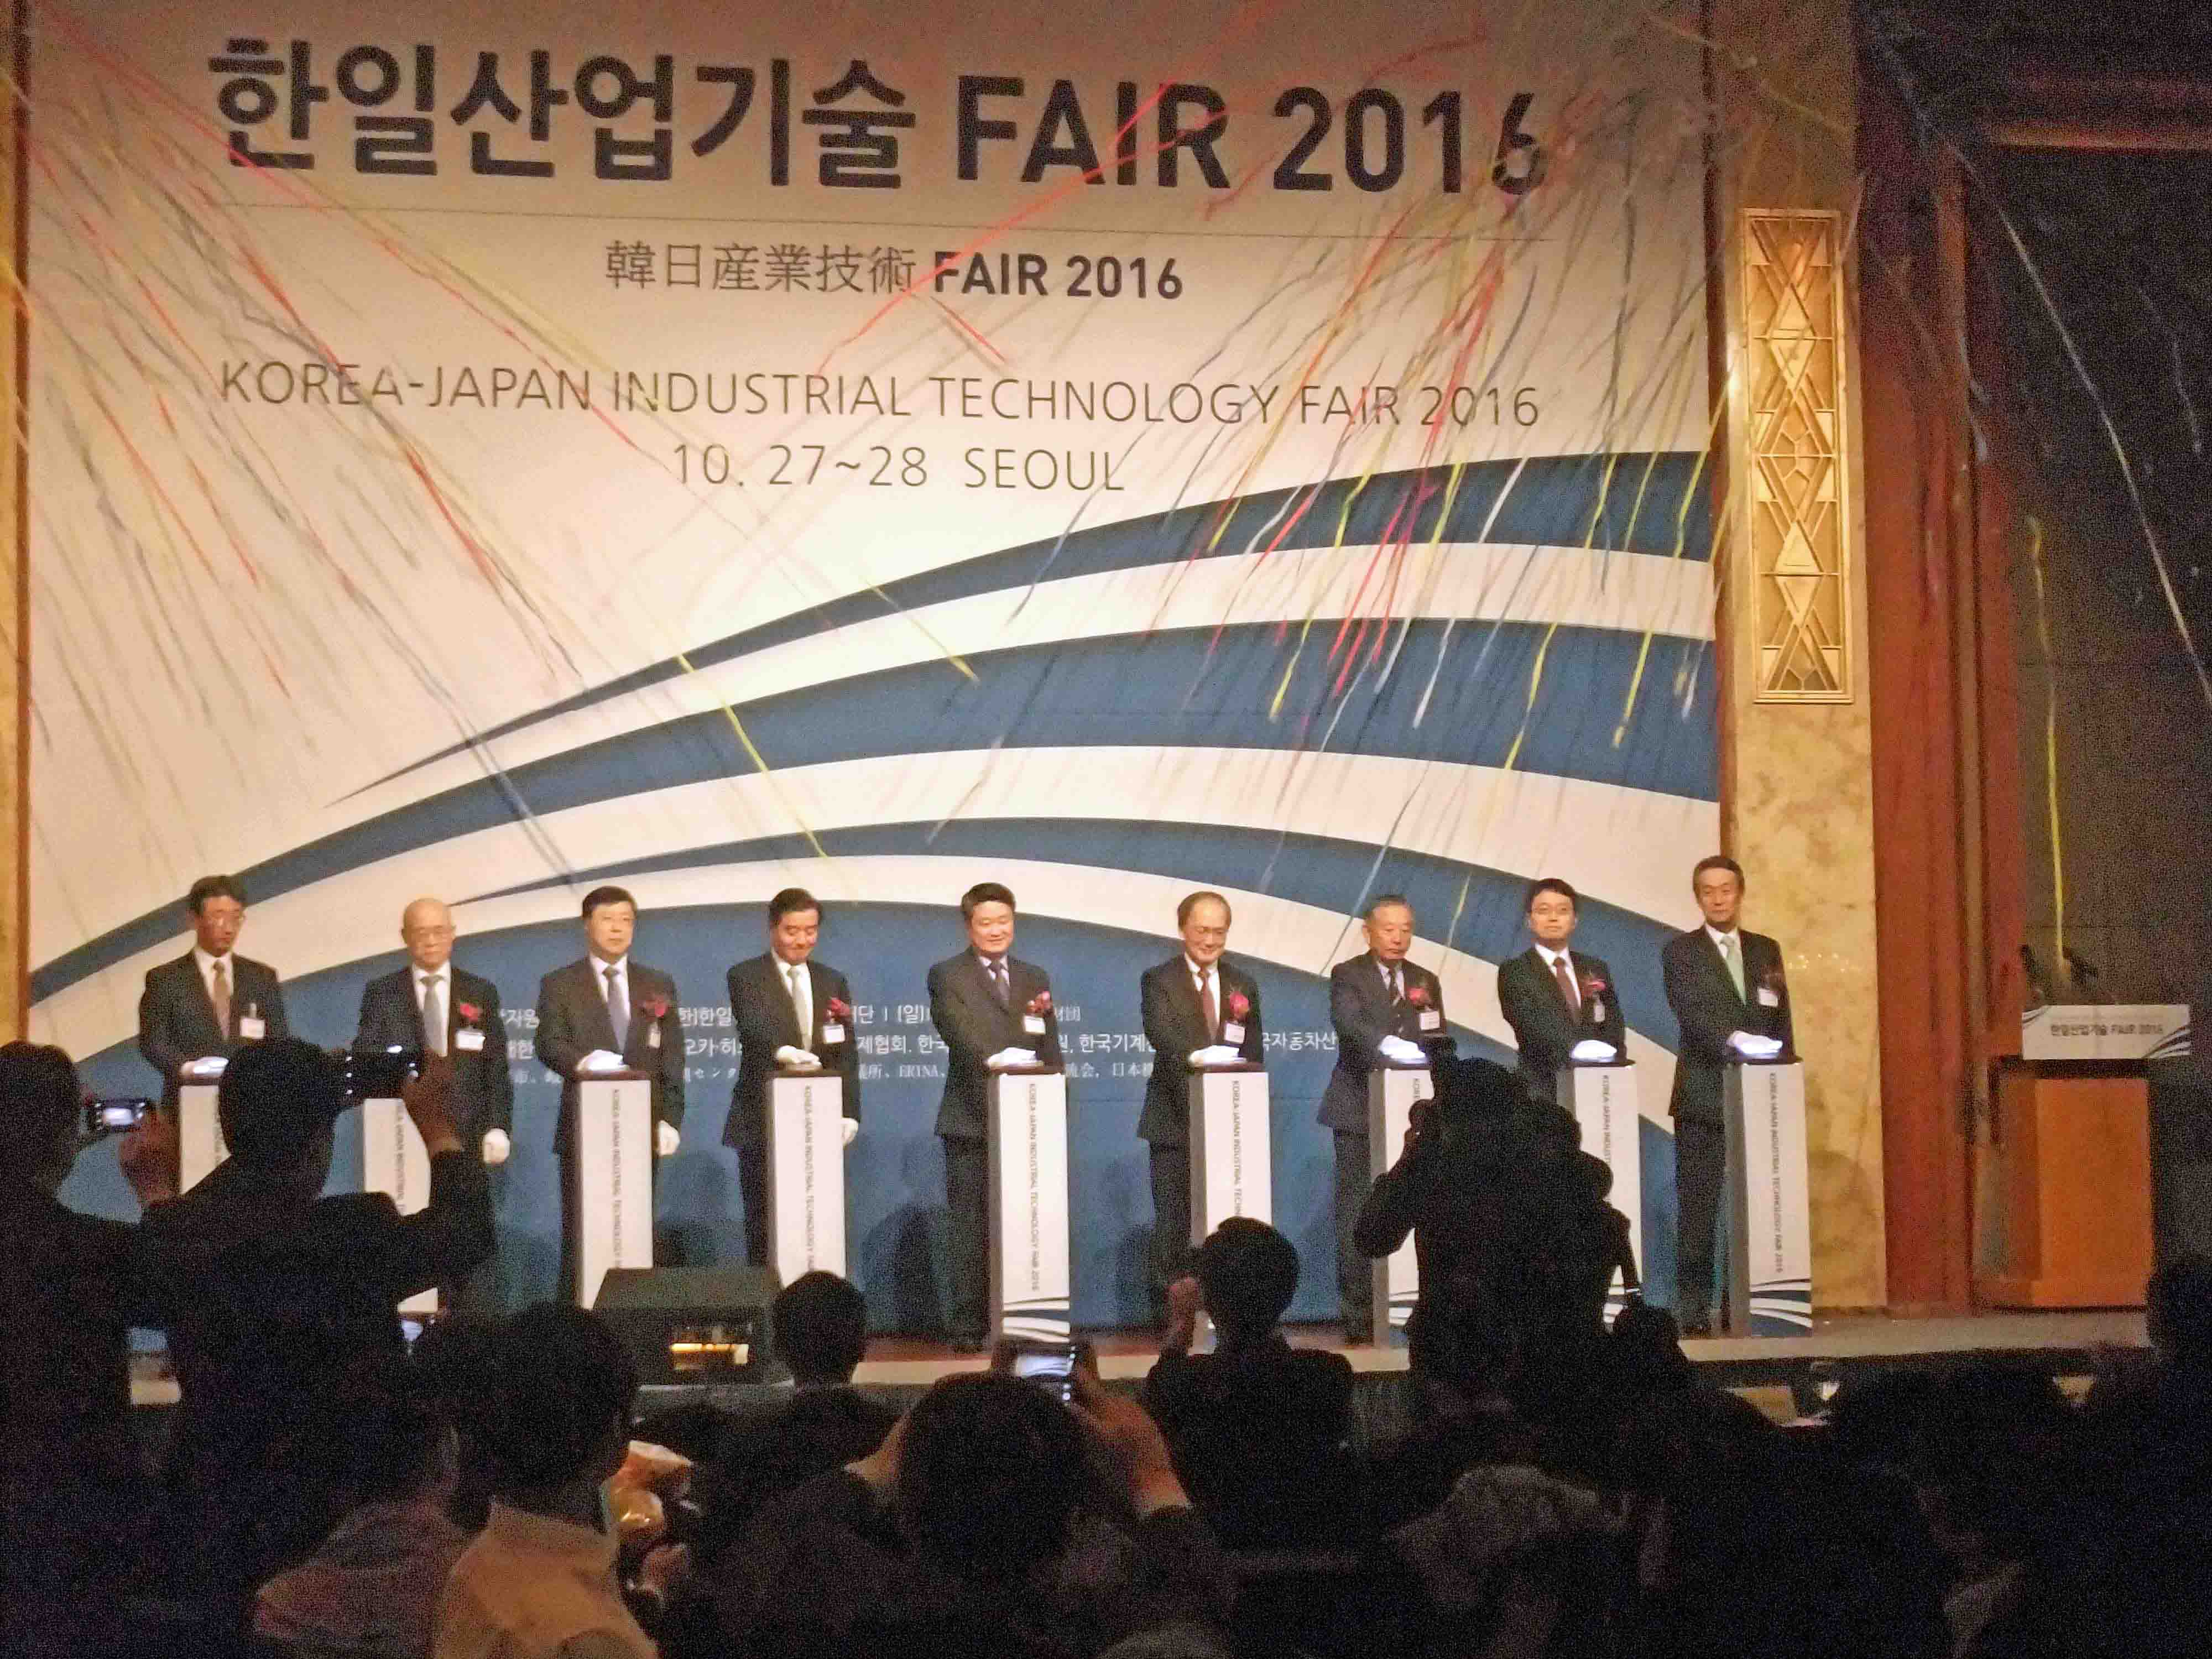 日韓産業技術フェア2016開幕セレモニー